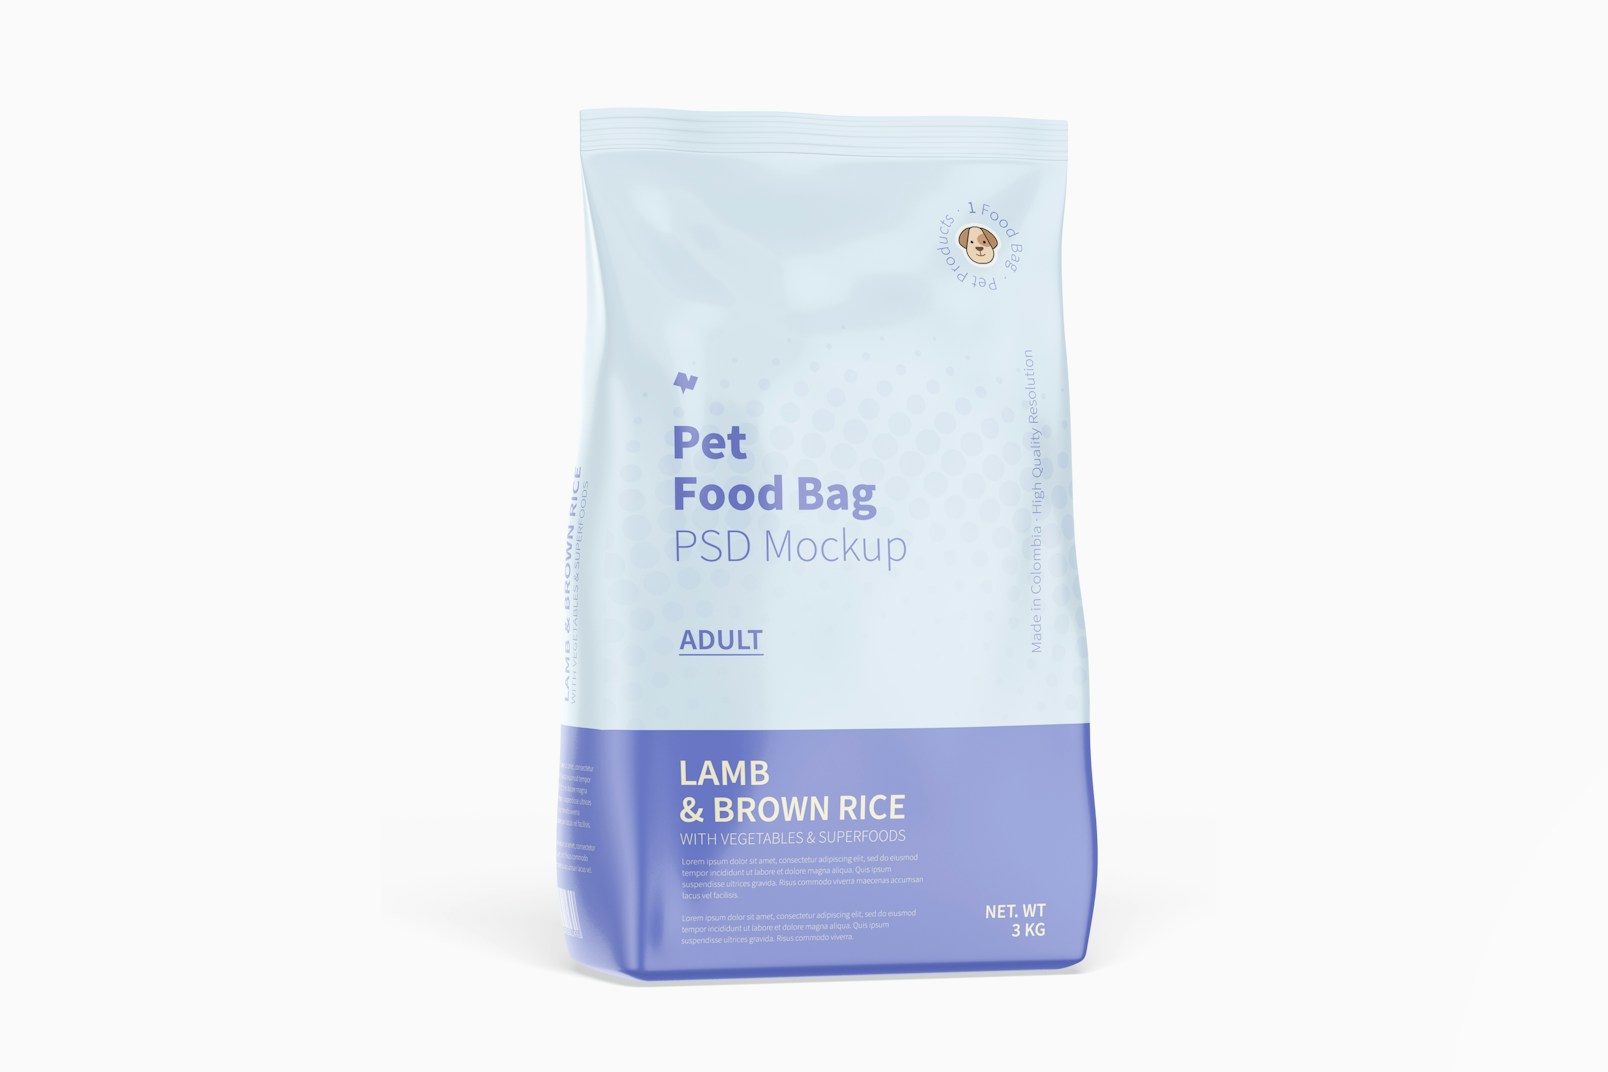 Pets Food Bag Mockup, Front View